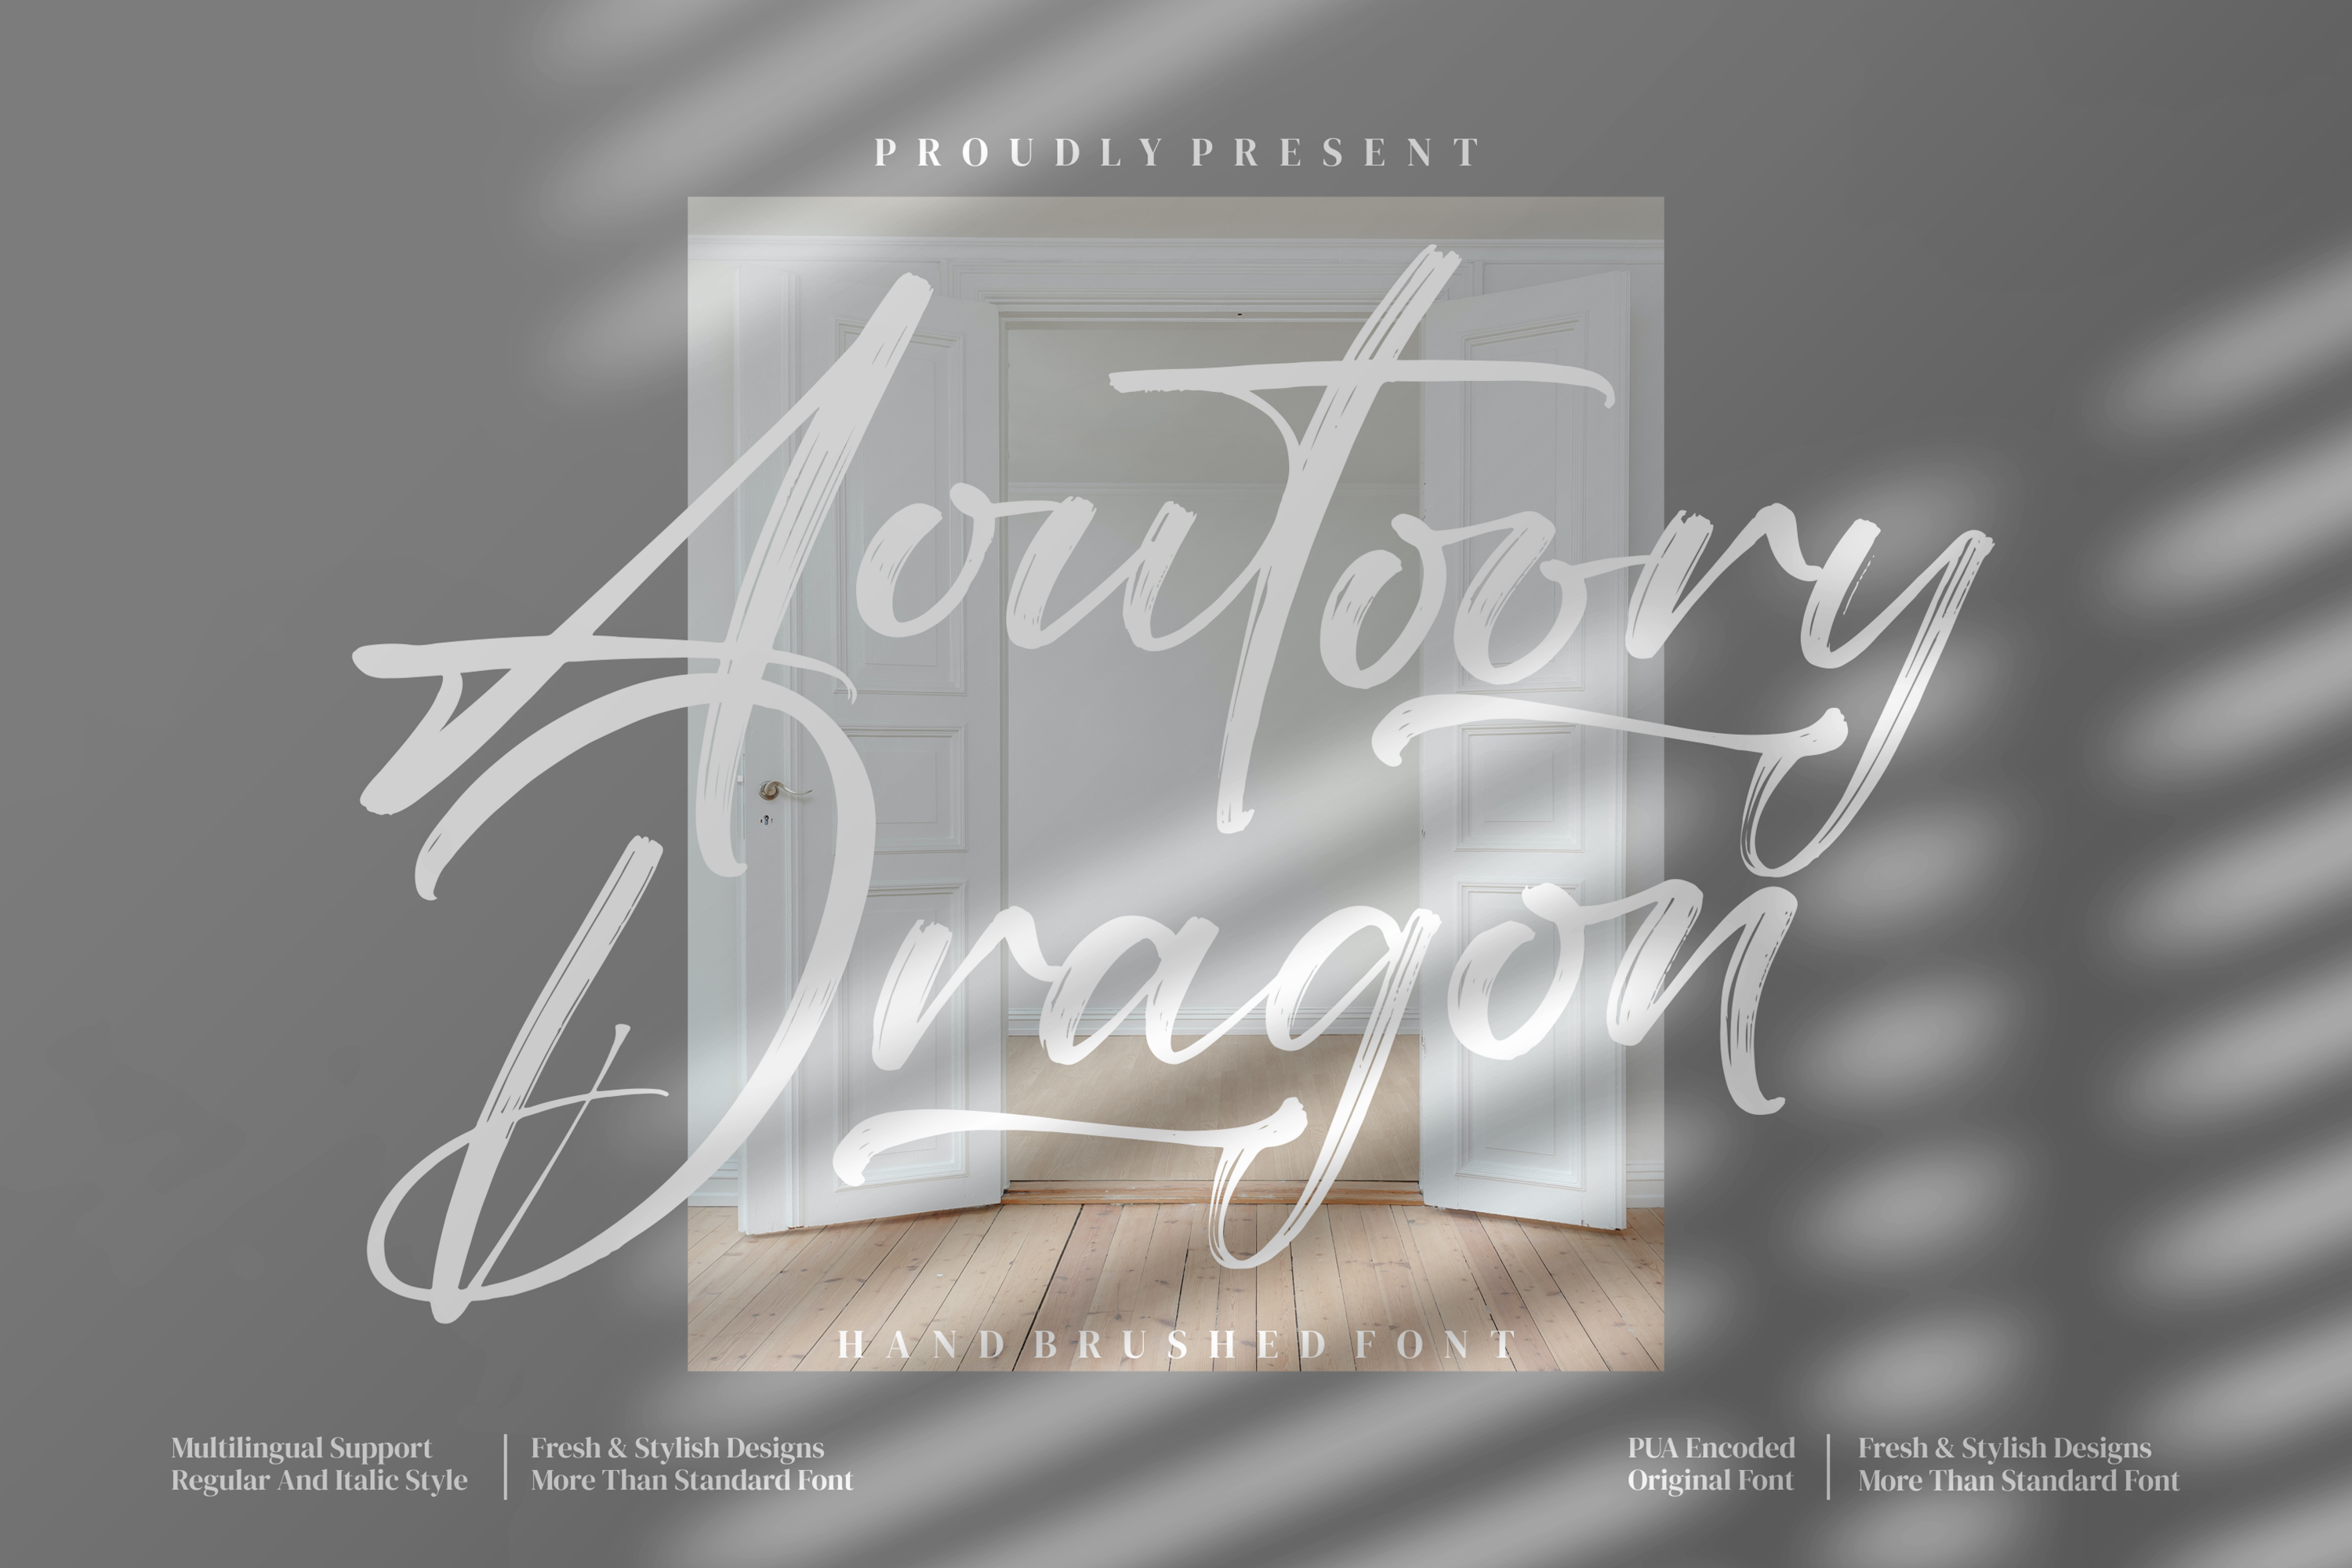 Aoutoory Dragon